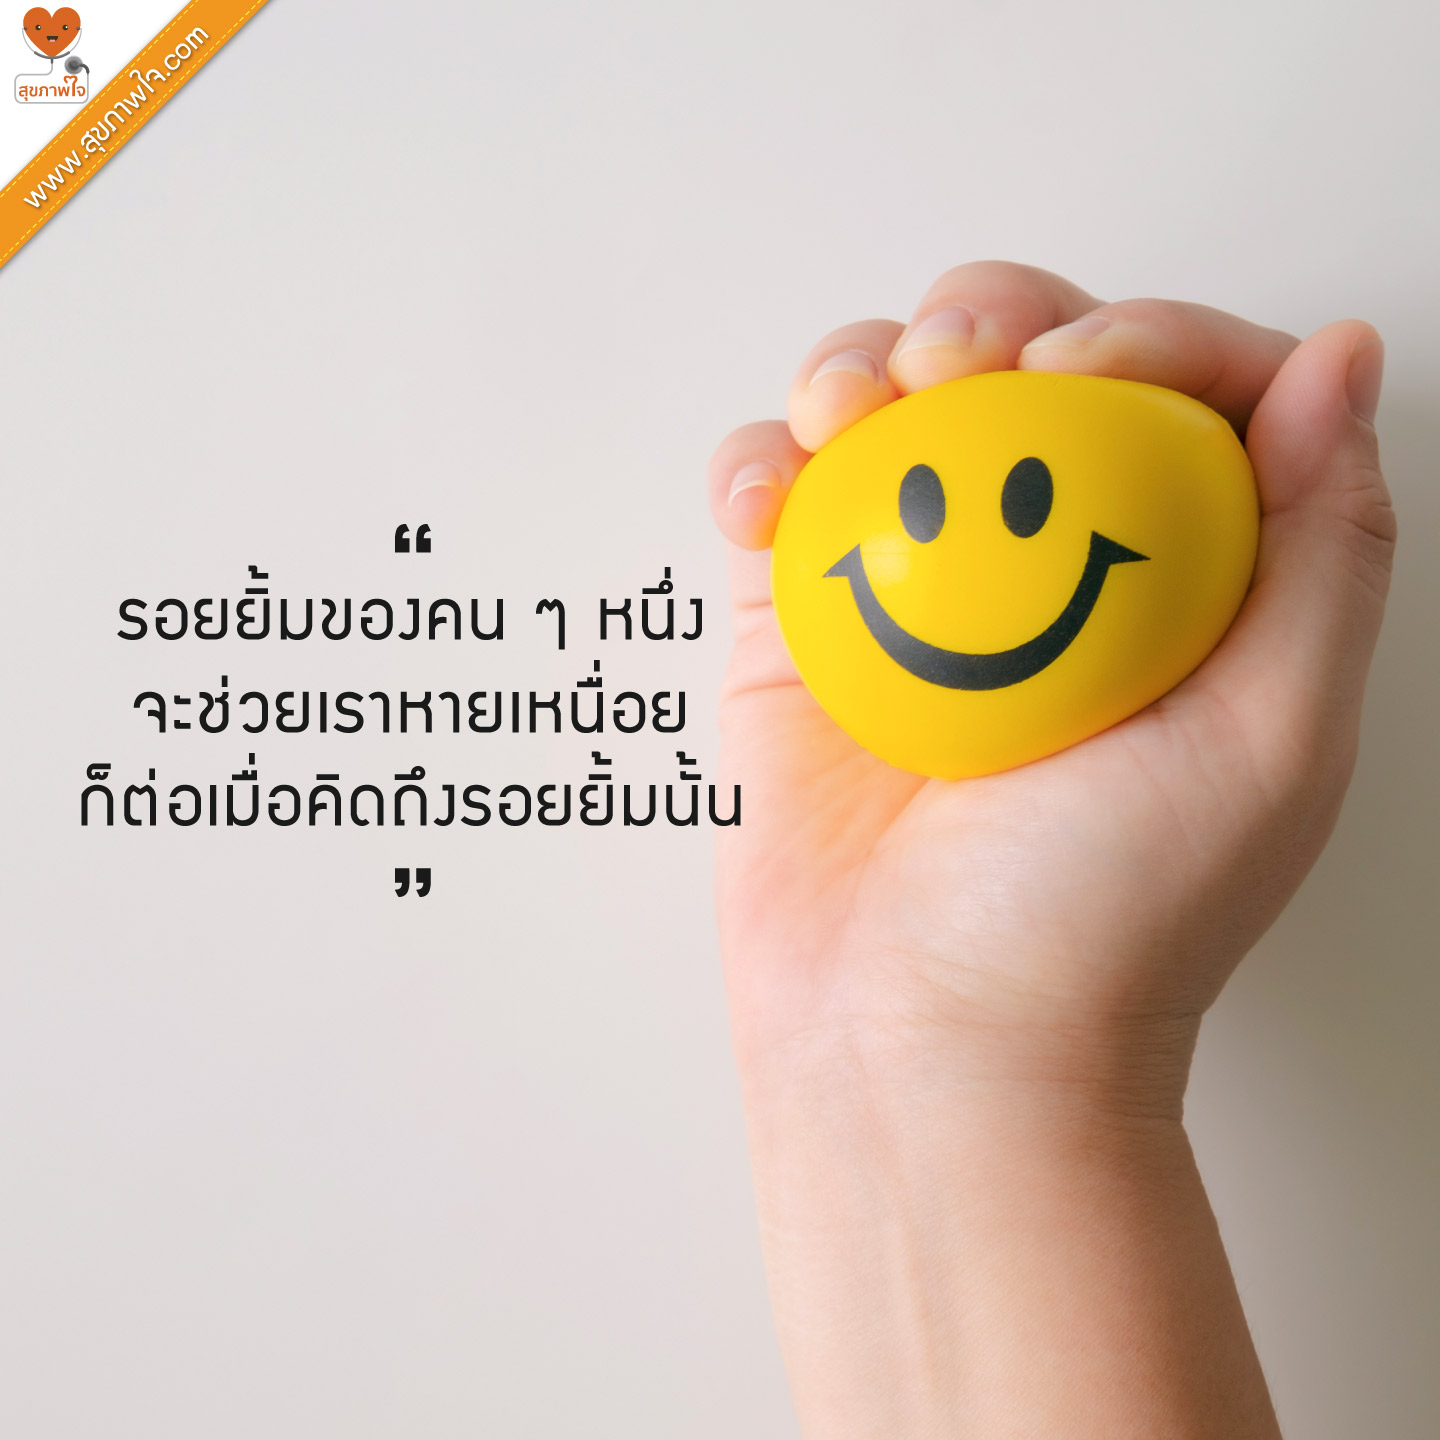 รอยยิ้มของคน ๆ หนึ่ง จะช่วยเราหายเหนื่อย ก็ต่อเมื่อคิดถึงรอยยิ้มนั้น